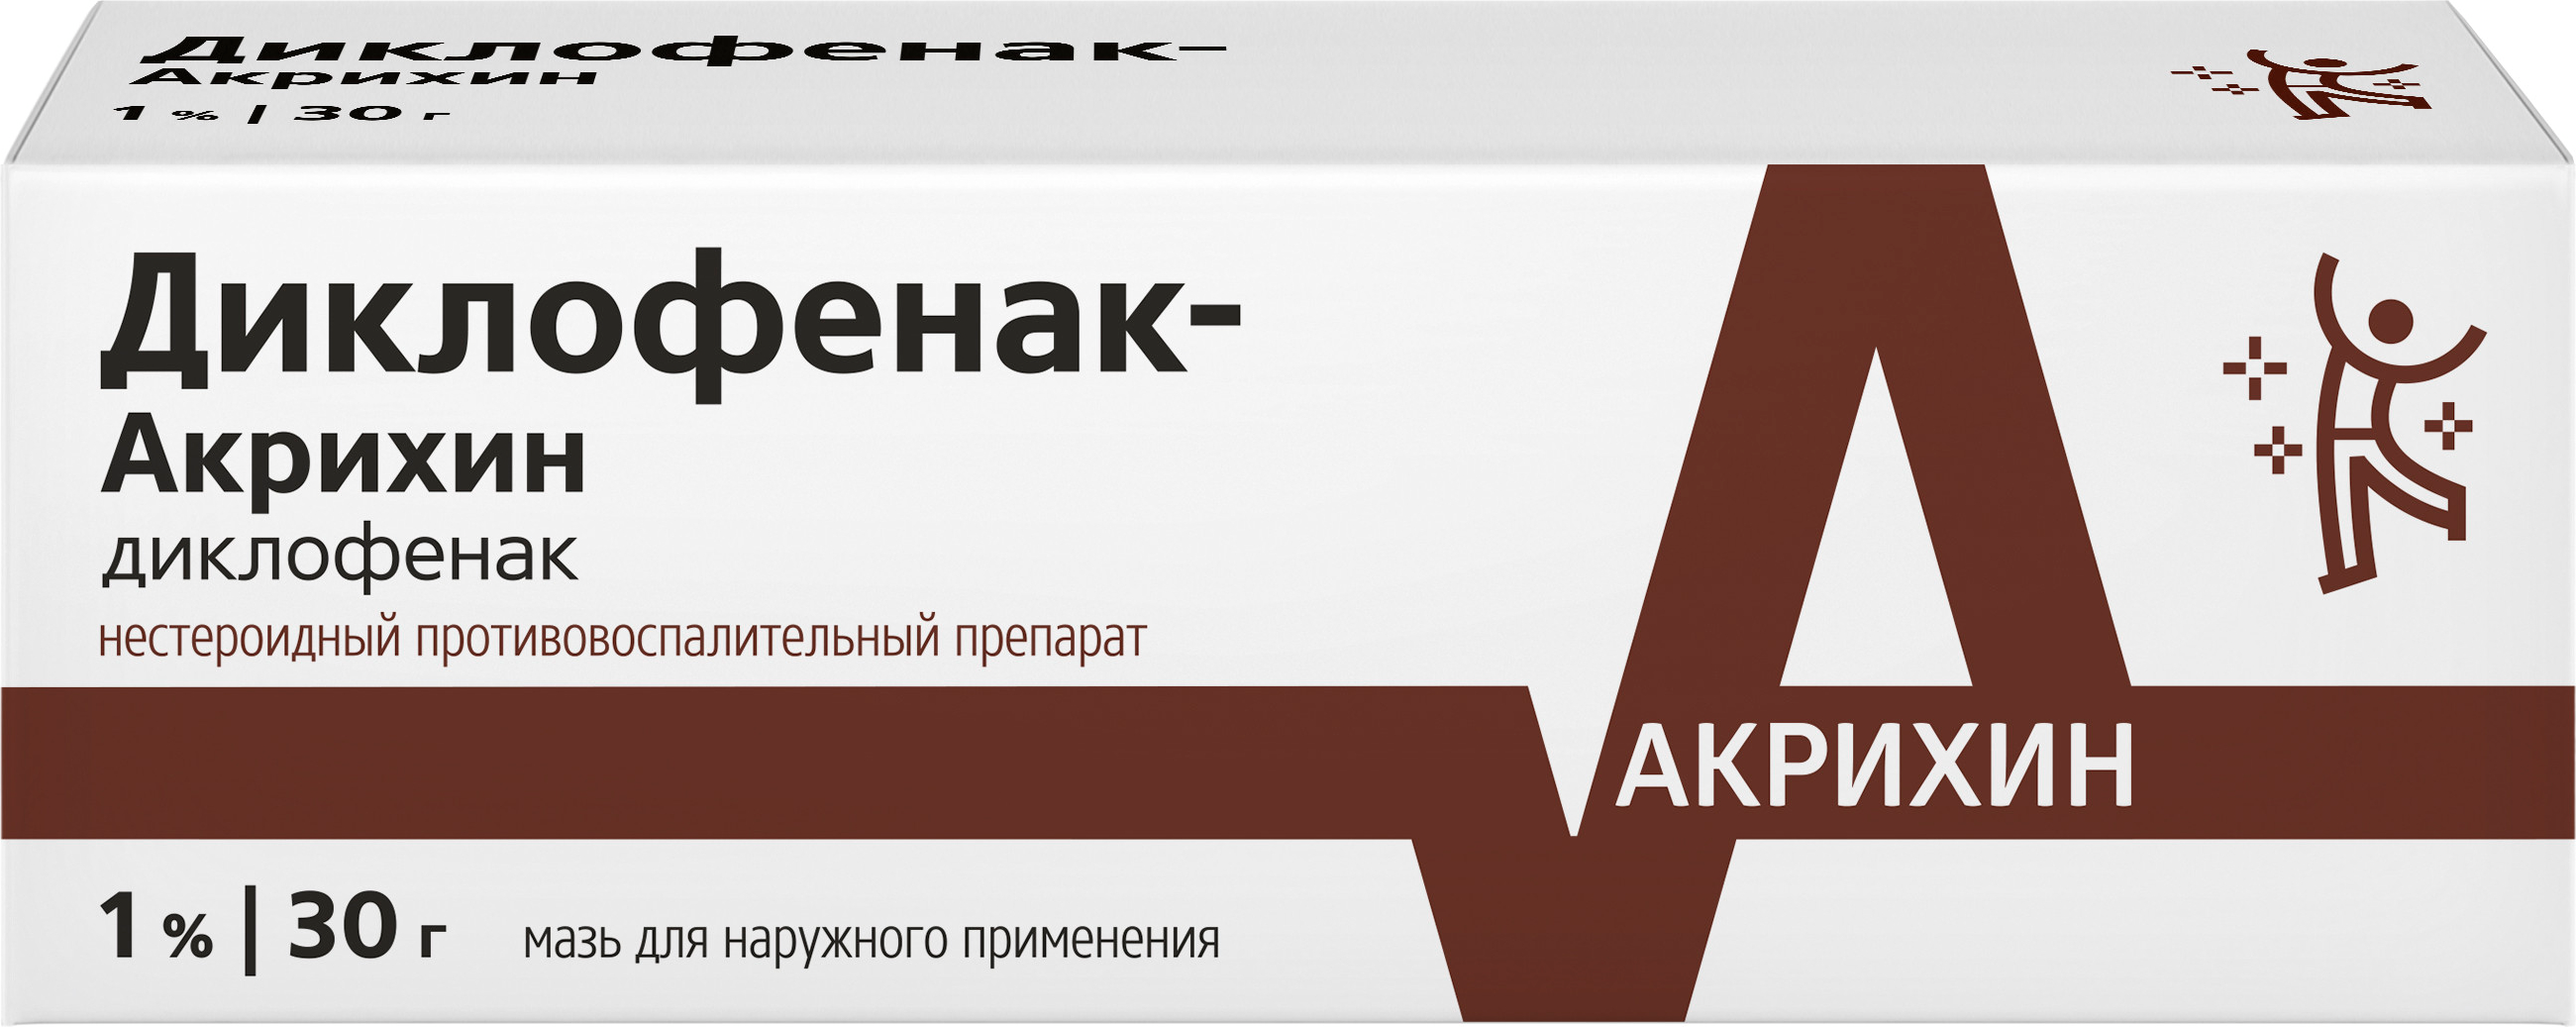 Диклофенак-Акрихин, мазь 1%, 30 г клотримазол акрихин мазь для наружного применения 1% 20г